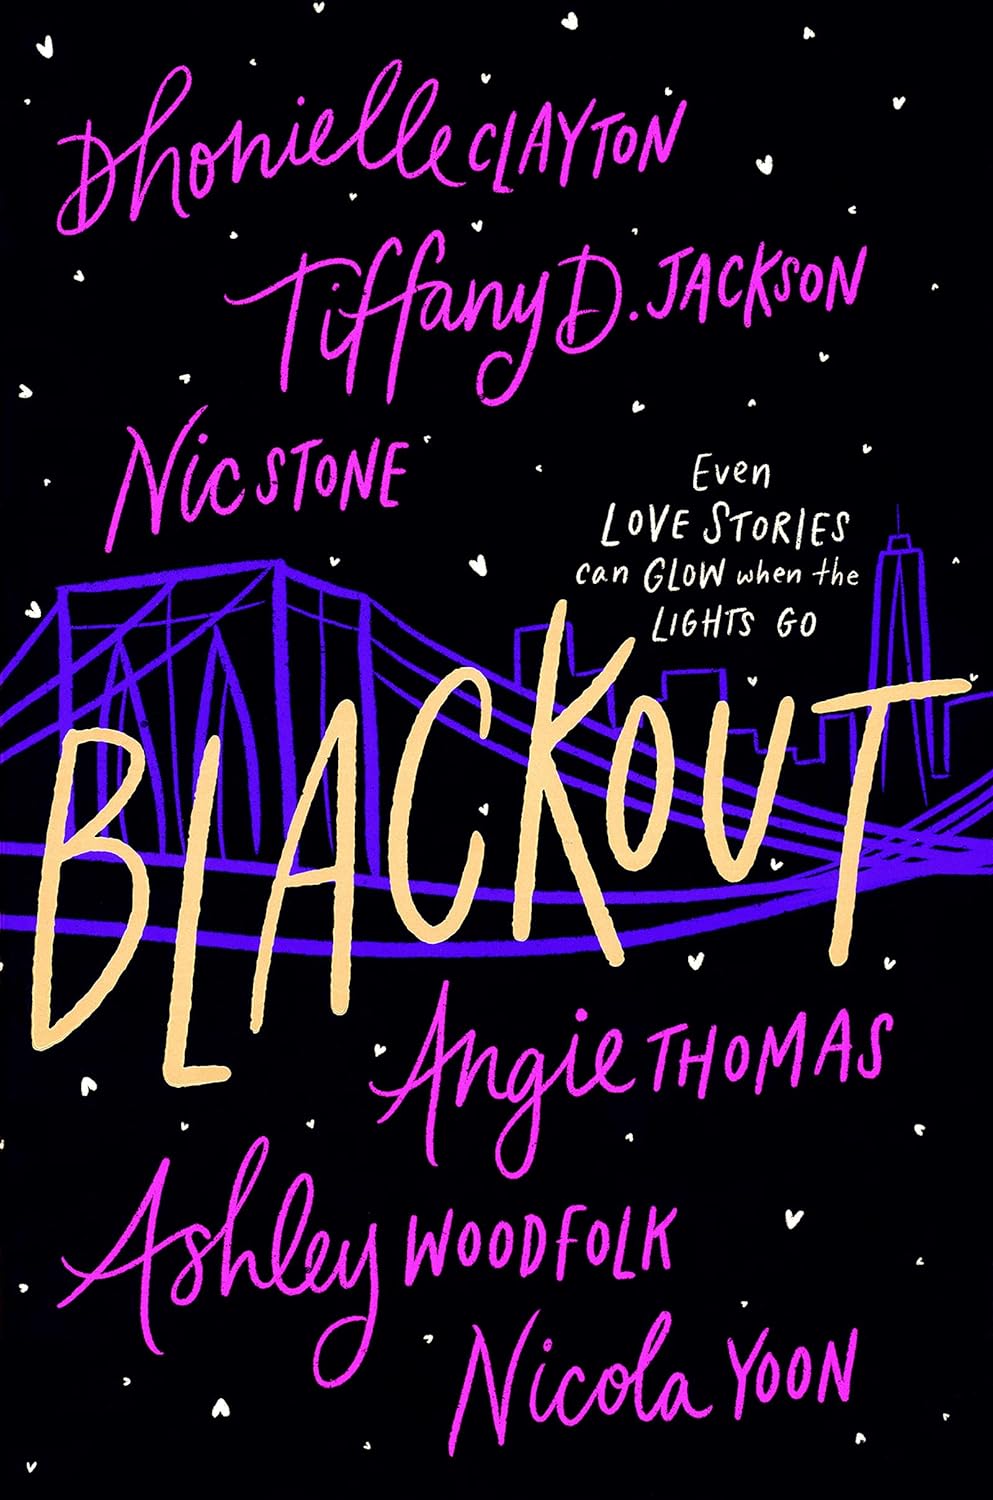 Blackout - Dhonielle Clayton, Tiffany D. Jackson, Nic Stone, Angie Thomas, Ashley Woodfolk, and Nicola Yoon